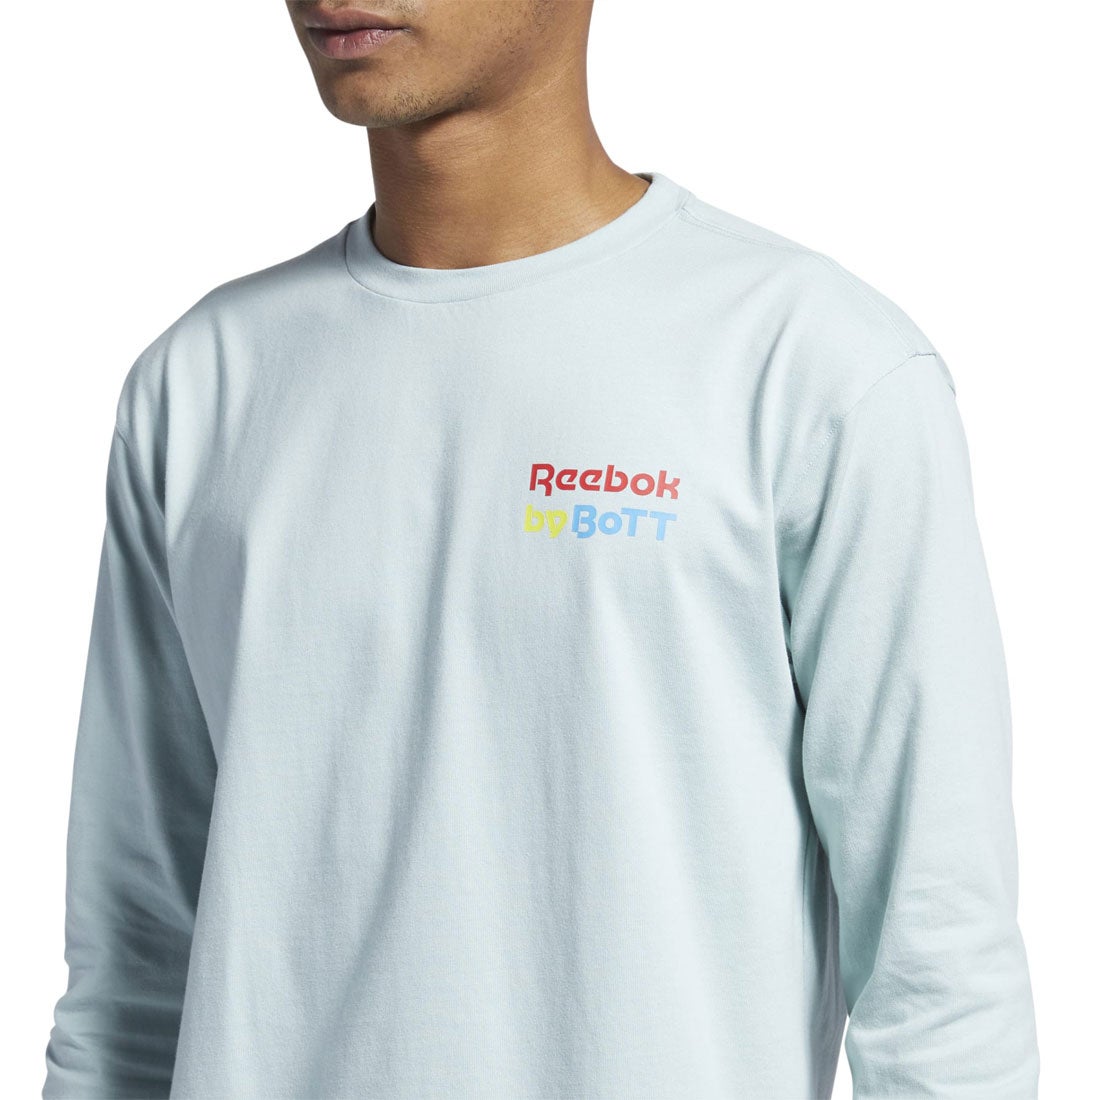 ボット ロングスリーブ Tシャツ / BoTT Long Sleeve T-Shirt 